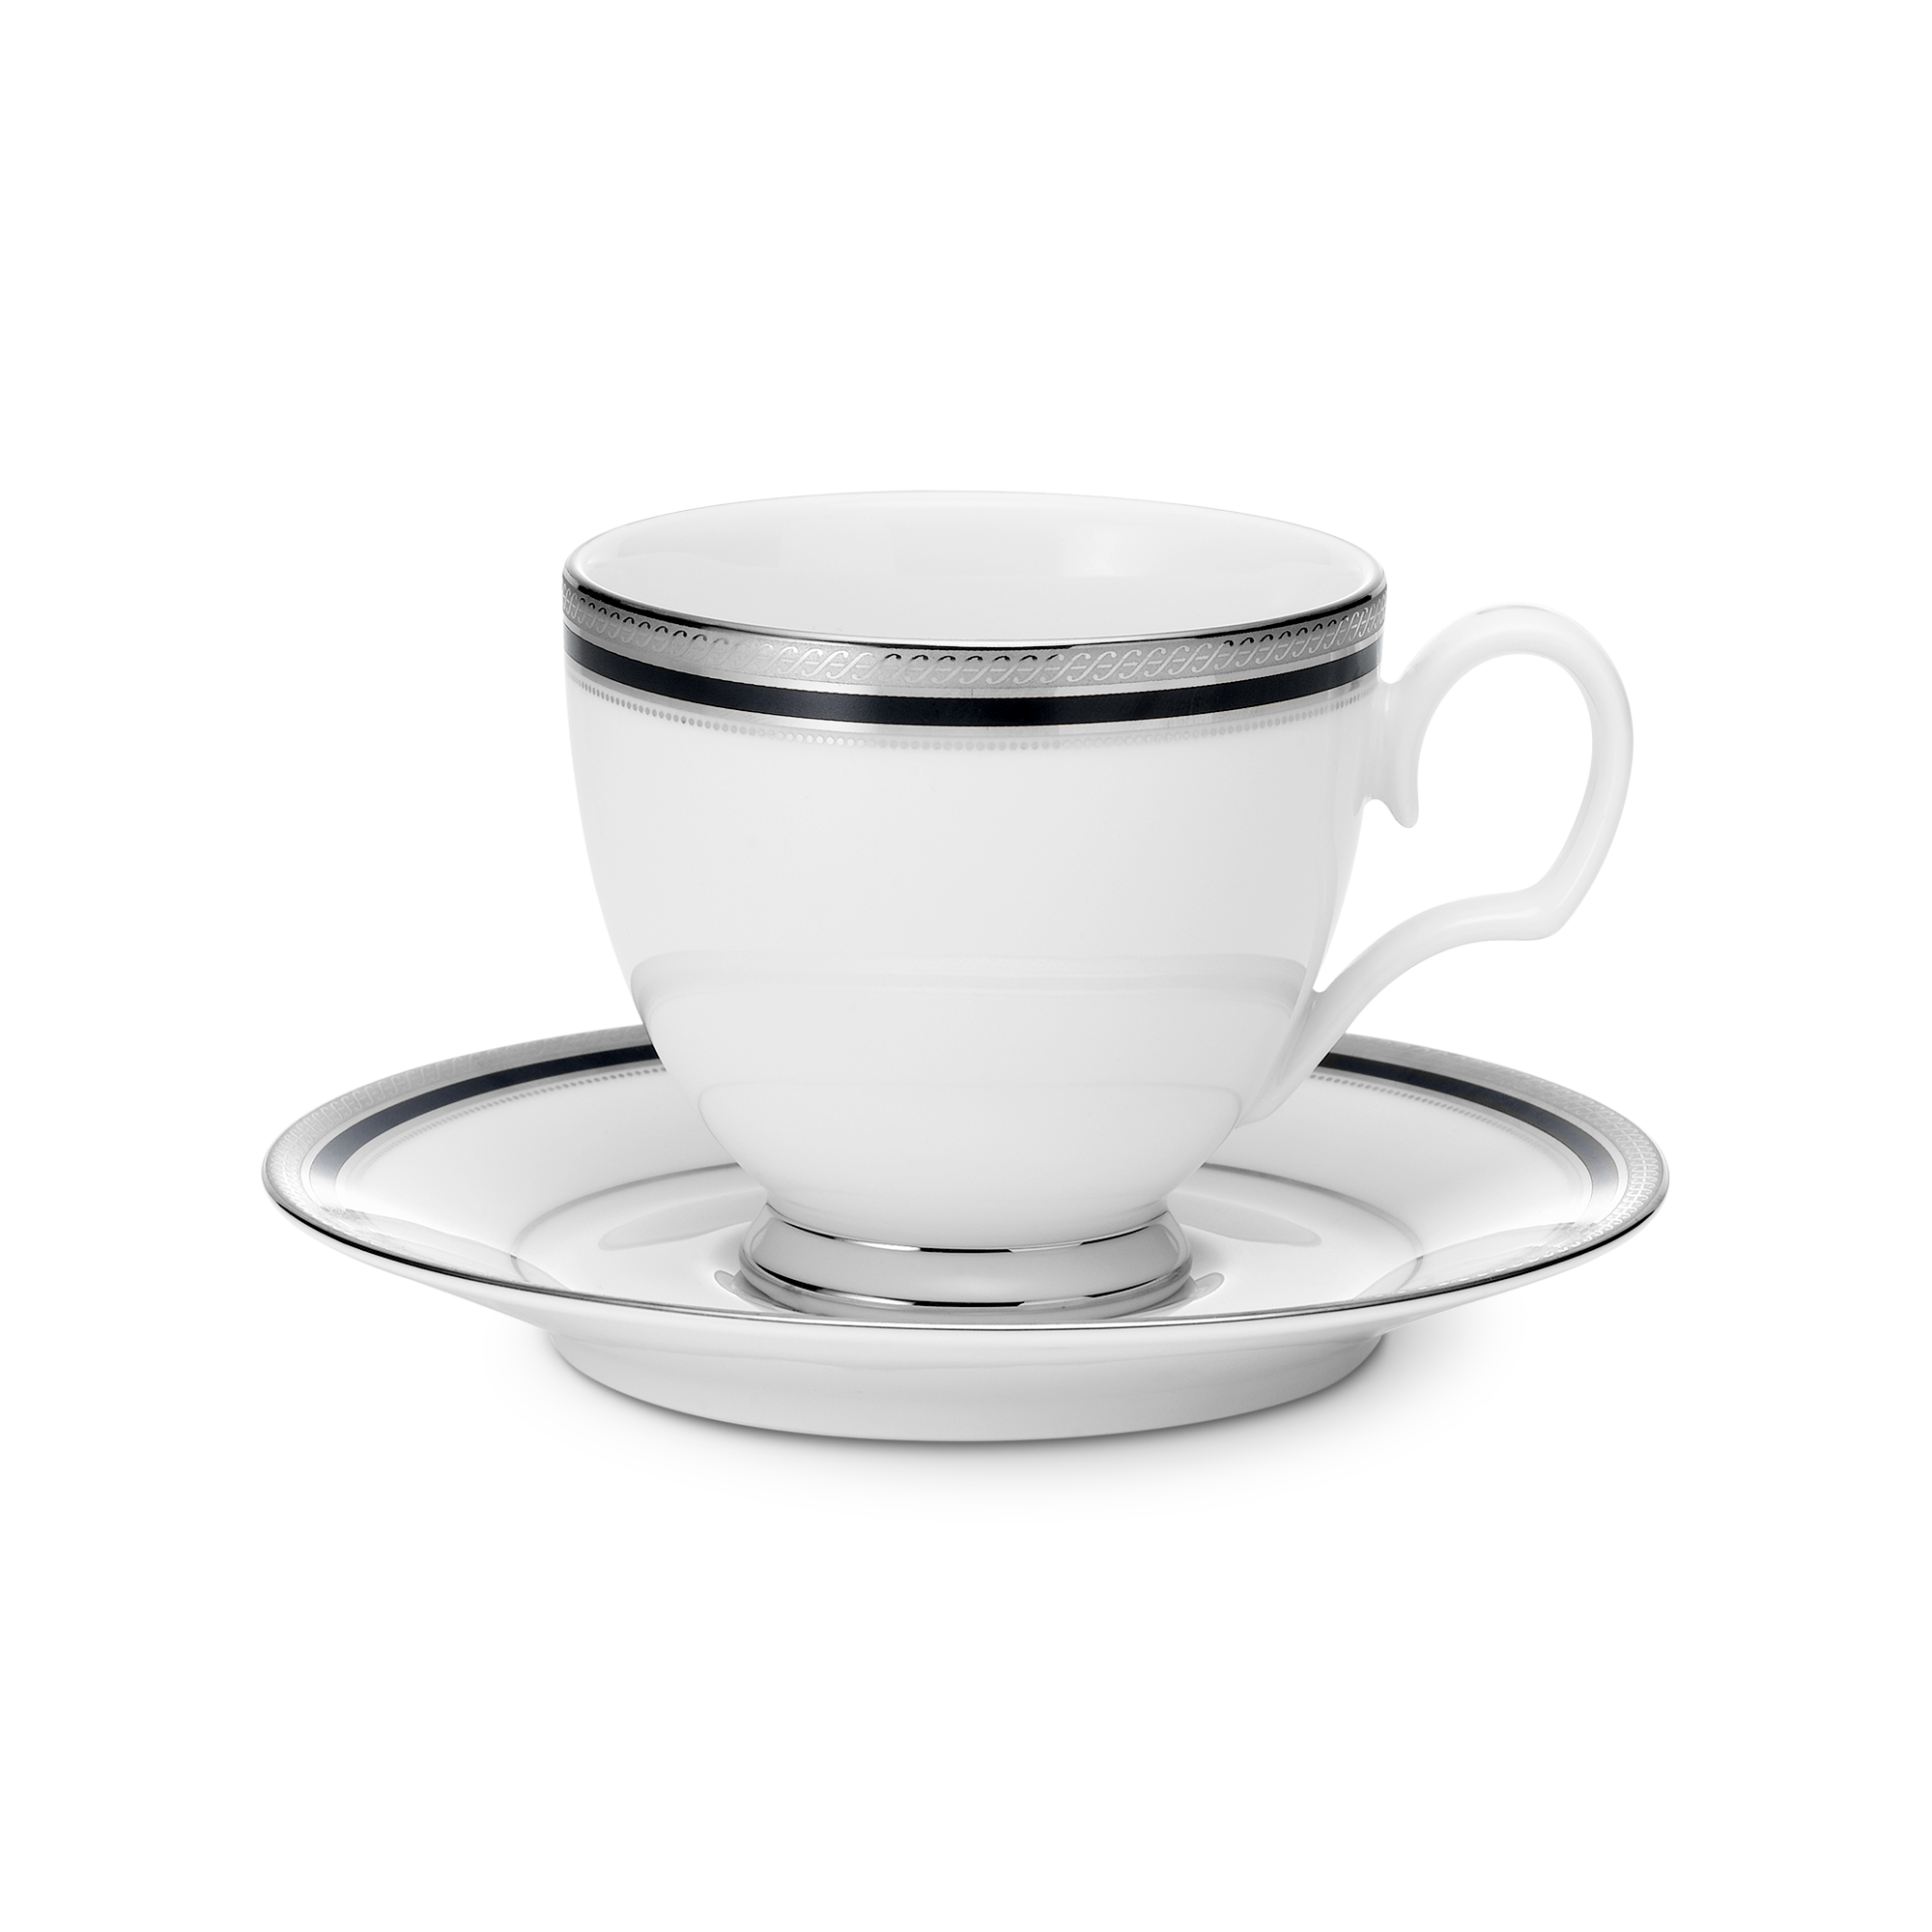  Chén trà (tách trà) kèm đĩa lót dung tích 250ml sứ trắng | Austin Platinum 4360L-T91988 